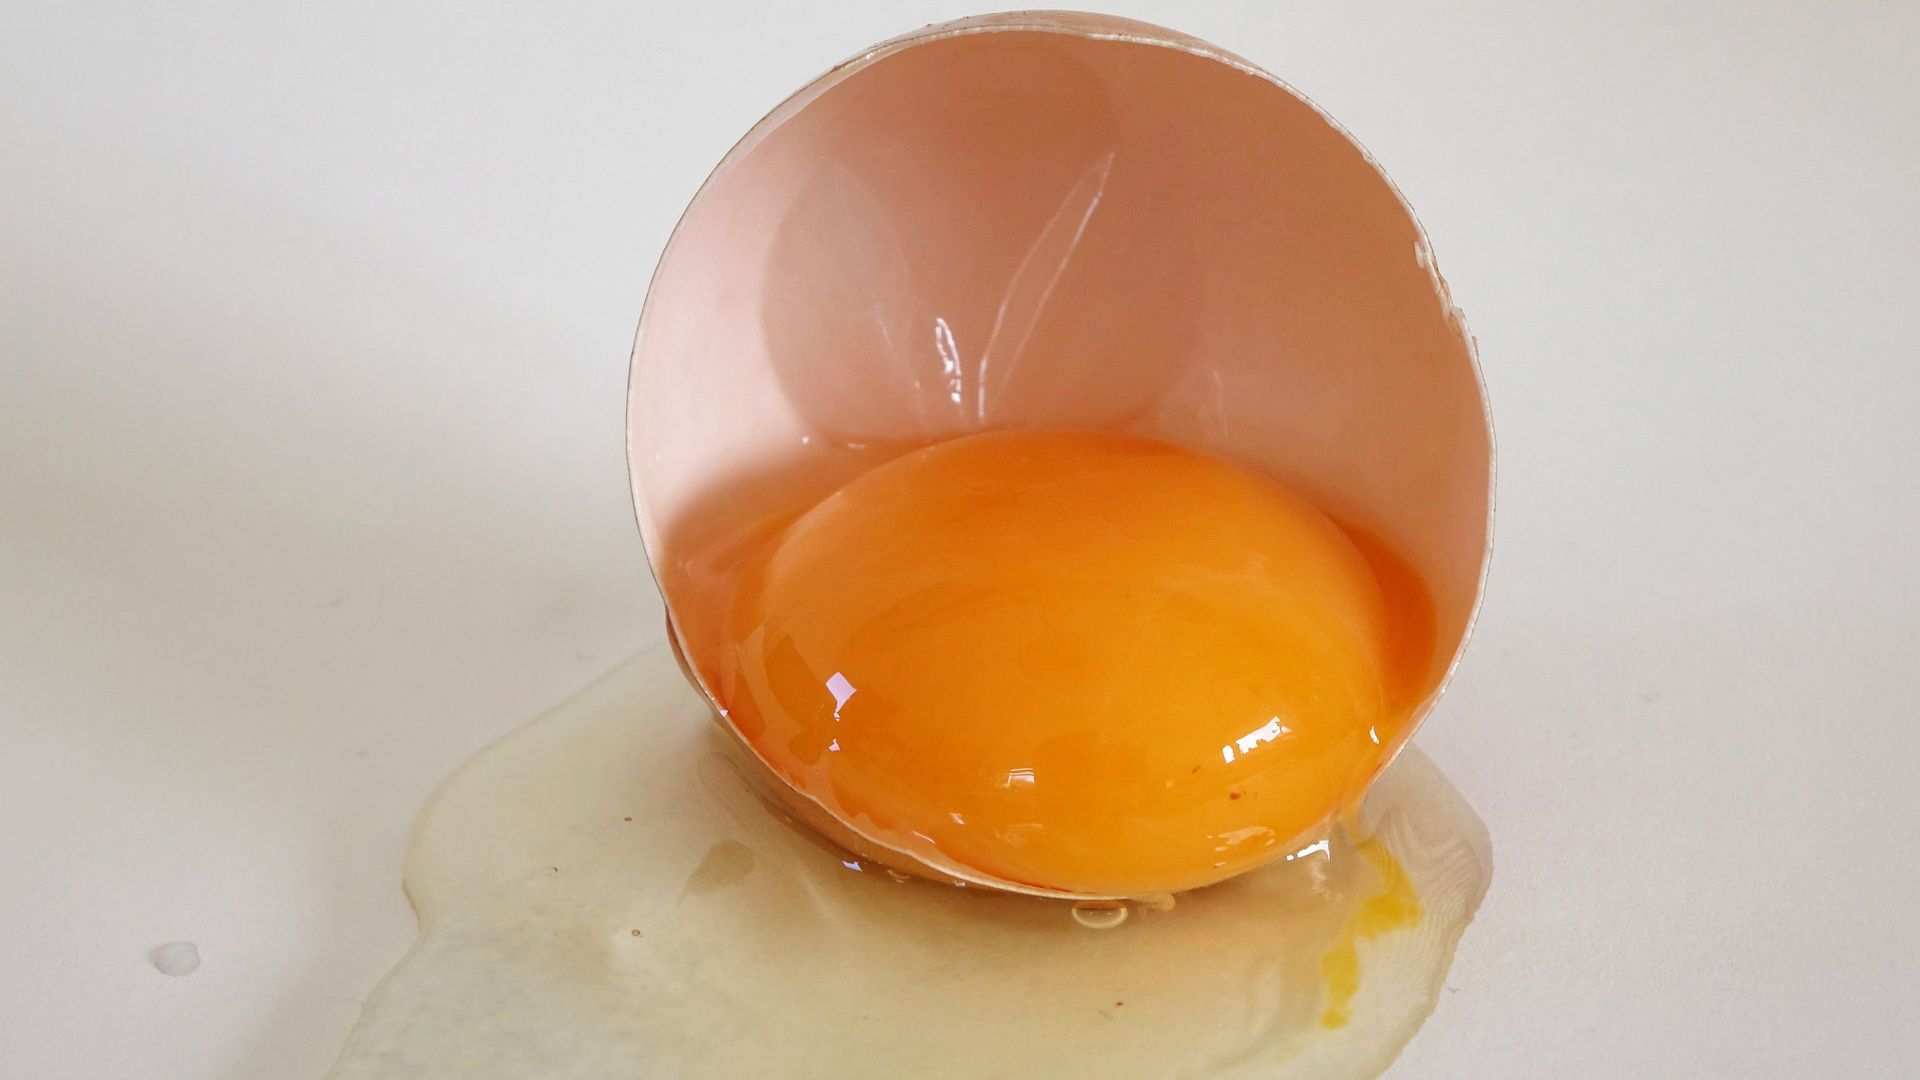 Lòng đỏ trứng có chứa nhiều chất dinh dưỡng có 13,6% đạm, 29,8% chất béo và 1,6% chất khoáng.